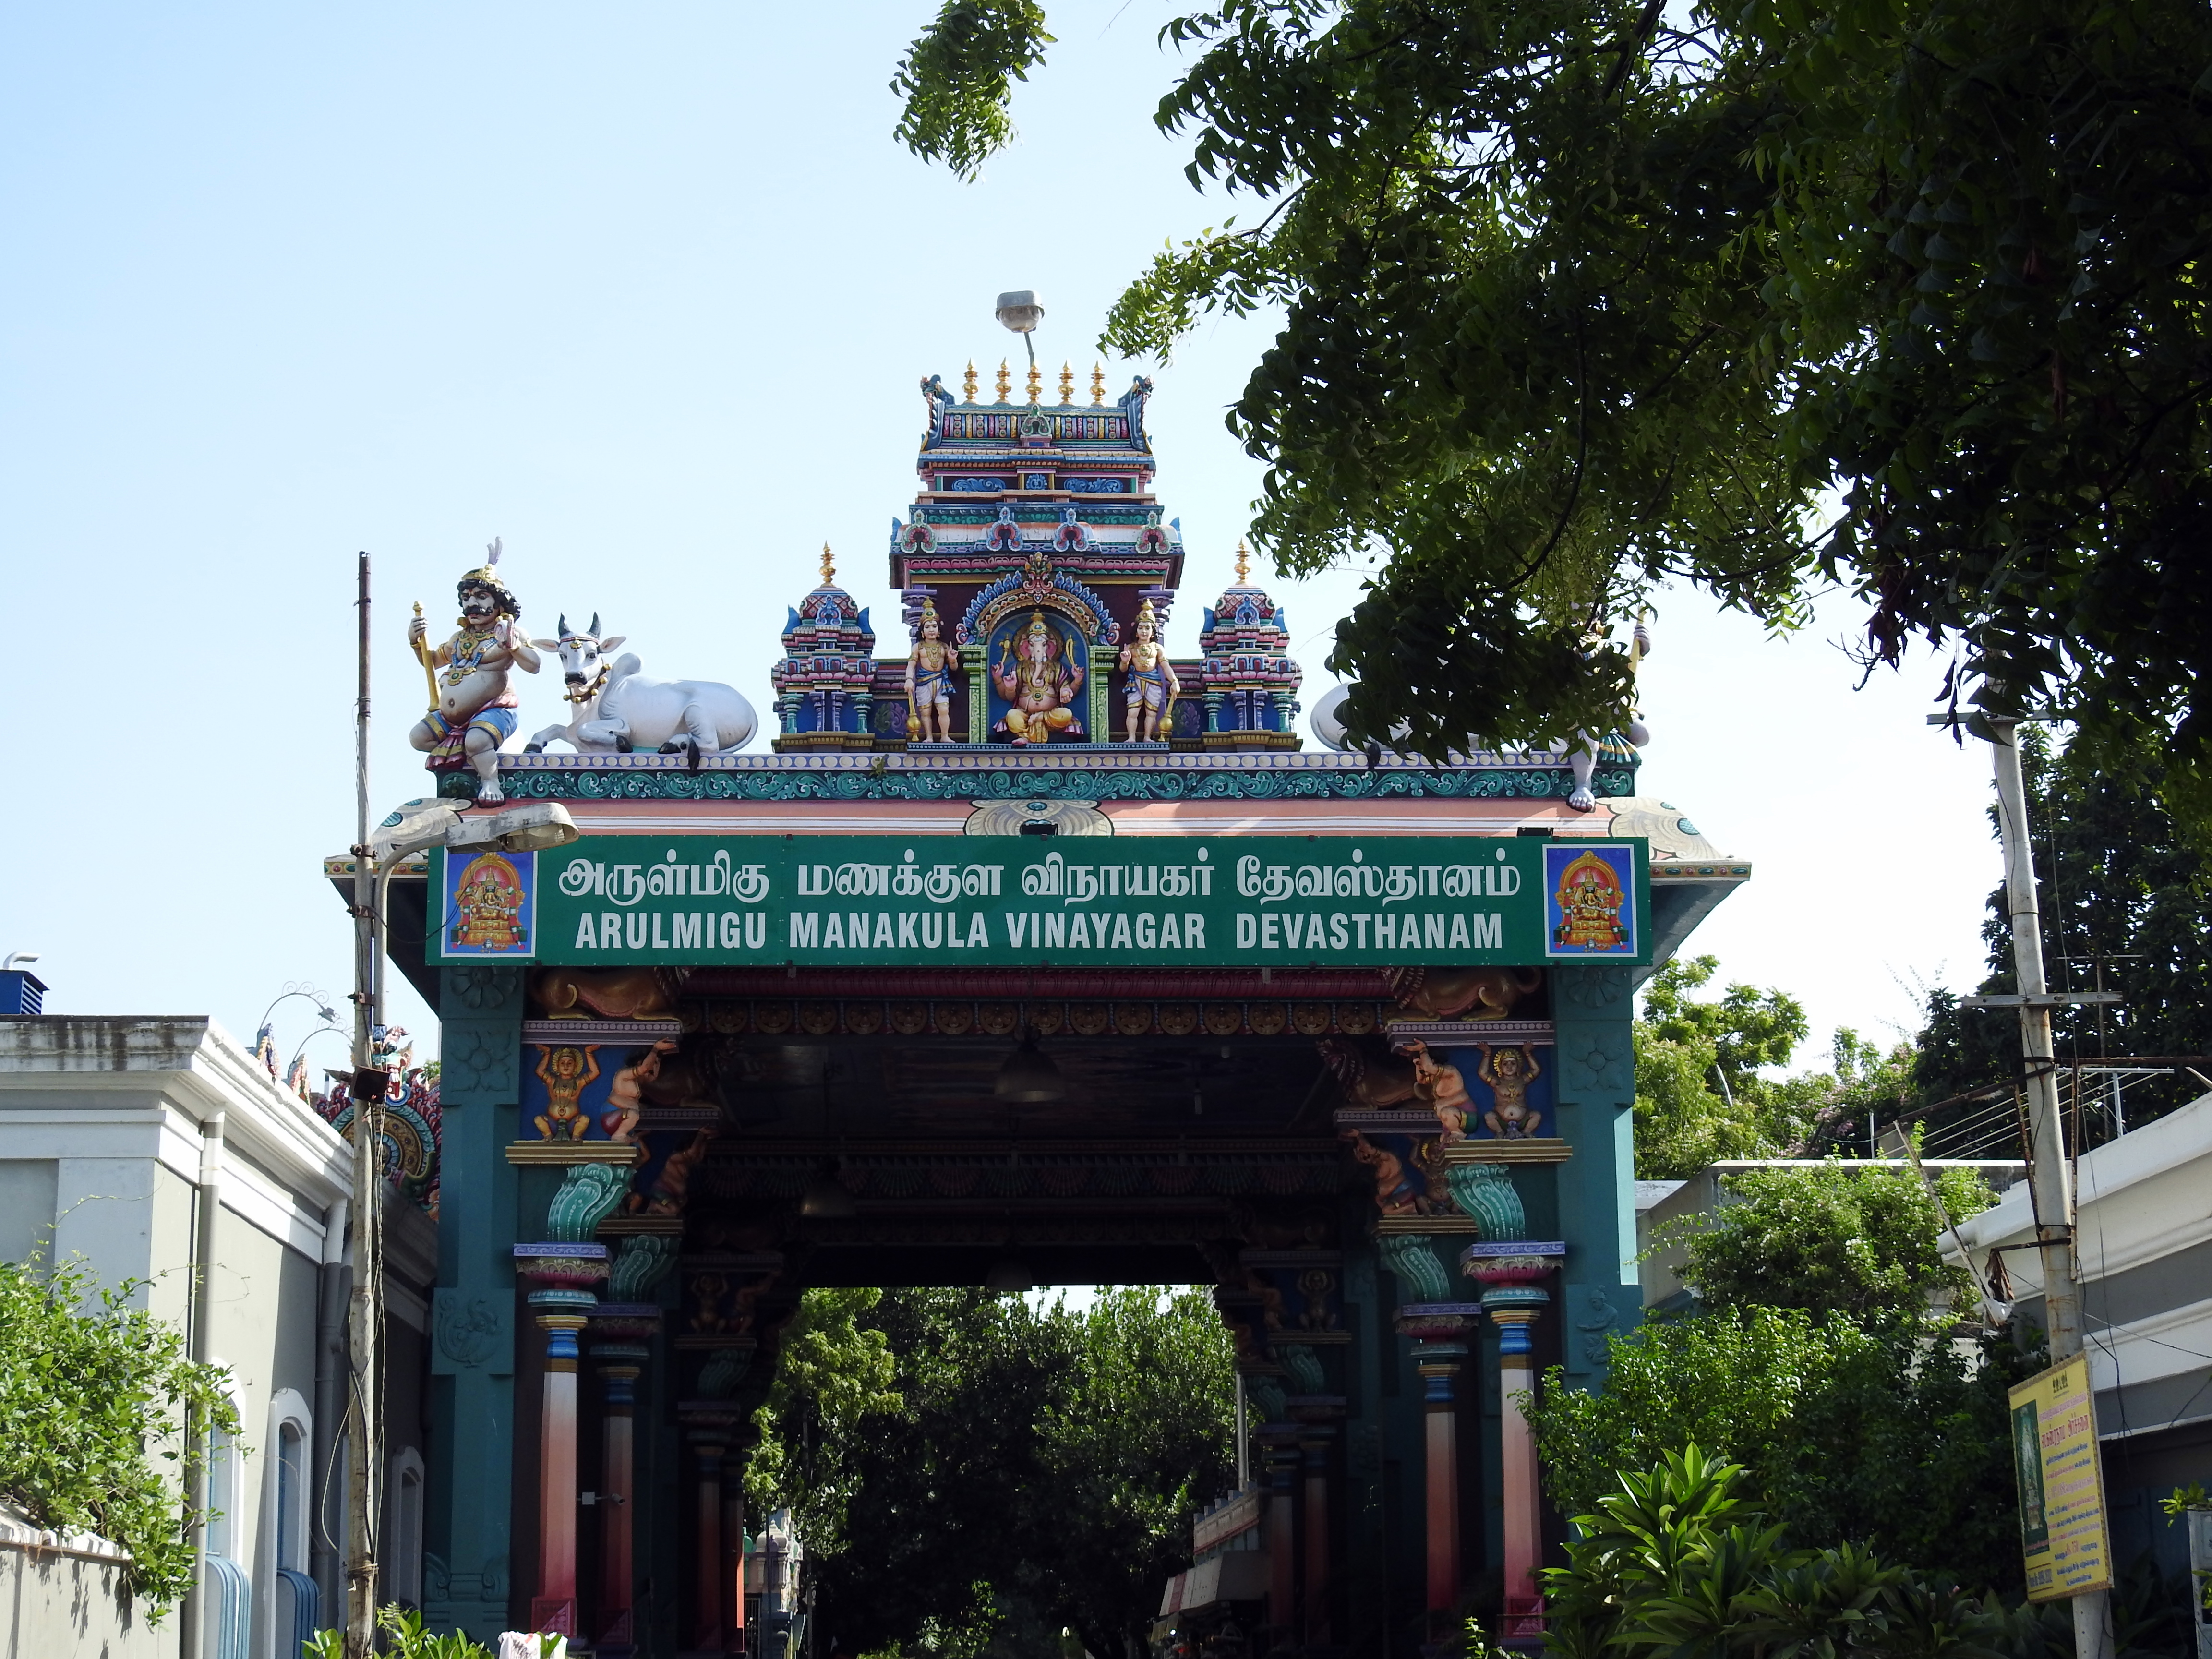 The Manakula Vinayagar temple